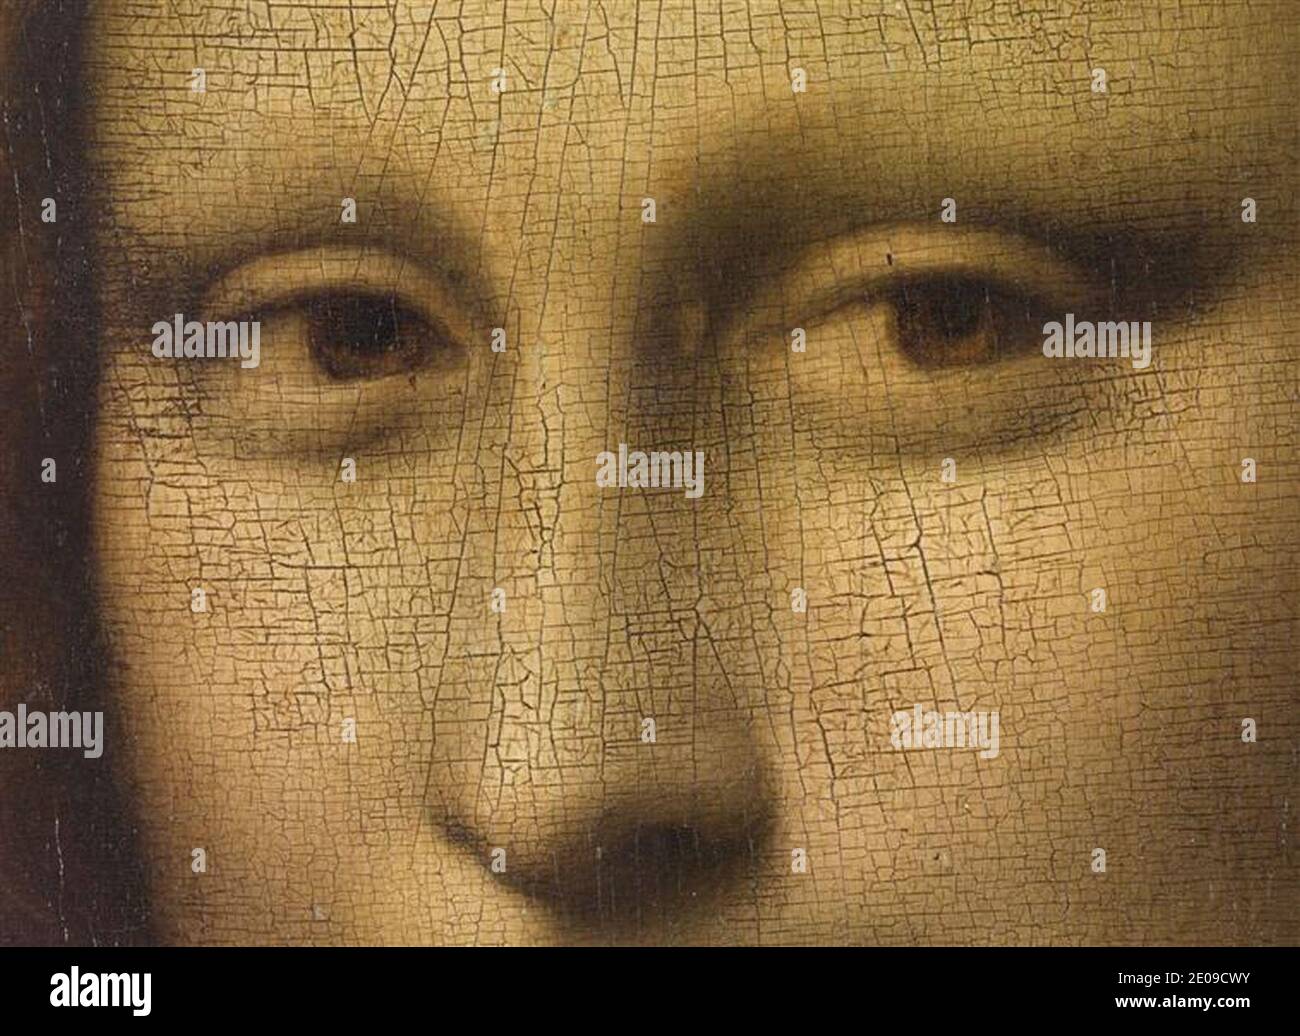 Leonardo di ser Piero da Vinci - Ritratto di Monna Lisa (dite la Joconde) - Louvre 779 - dettaglio (occhi). Foto Stock